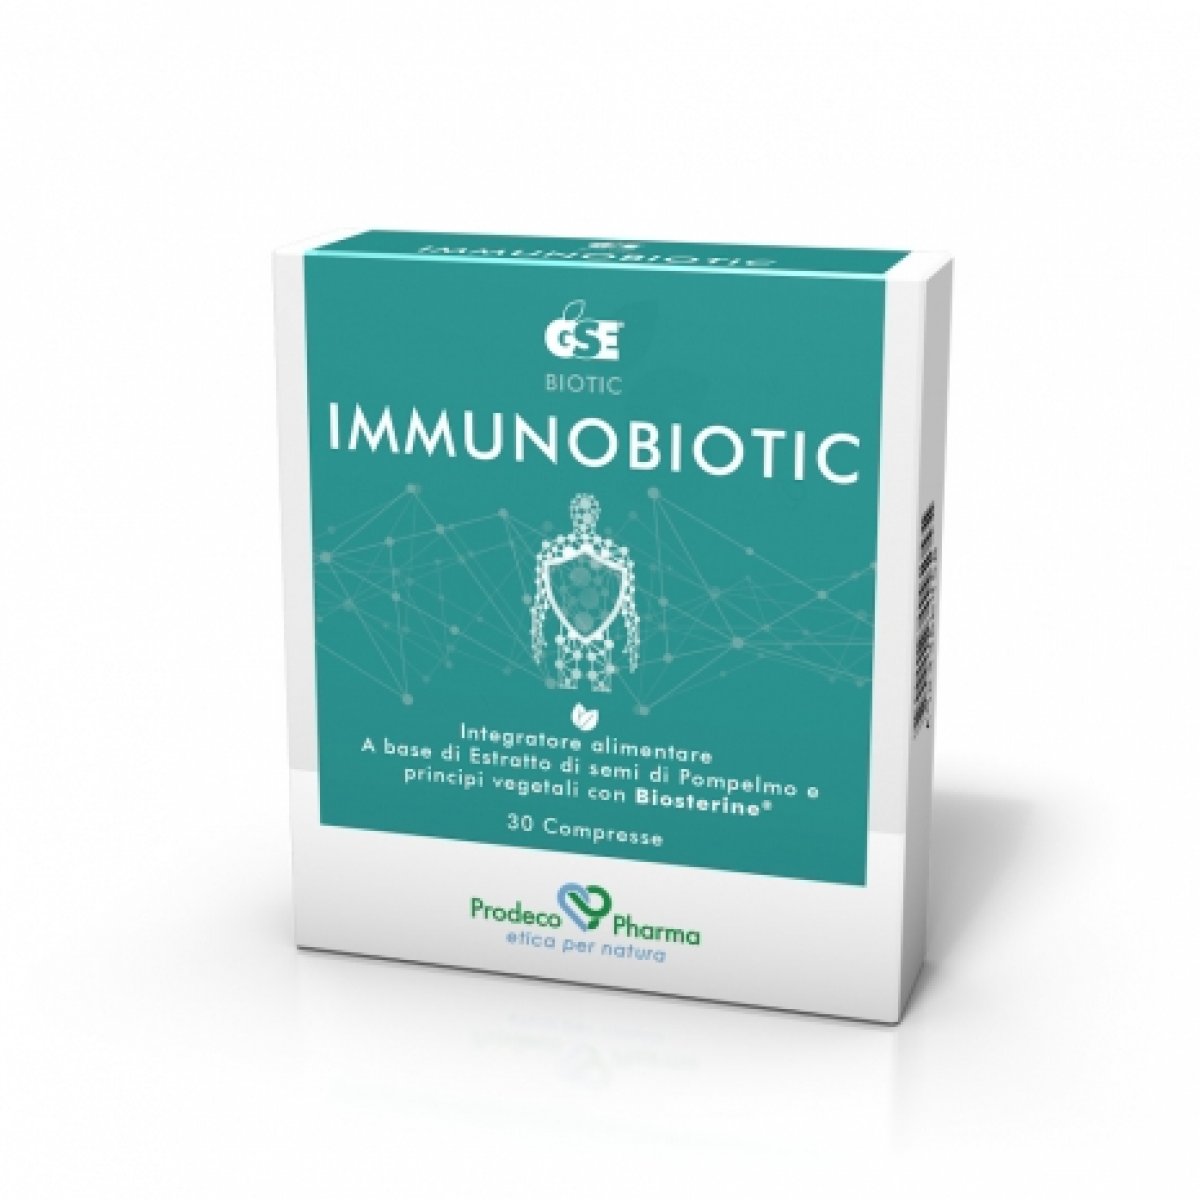 GSE  Immunobiotic - Prodeco Pharma Integratore a base di estratto di semi di pompelmo, Biosterine®, Uncaria e Boswelia utile per aumentare le difese immunitarie. 30 compresse